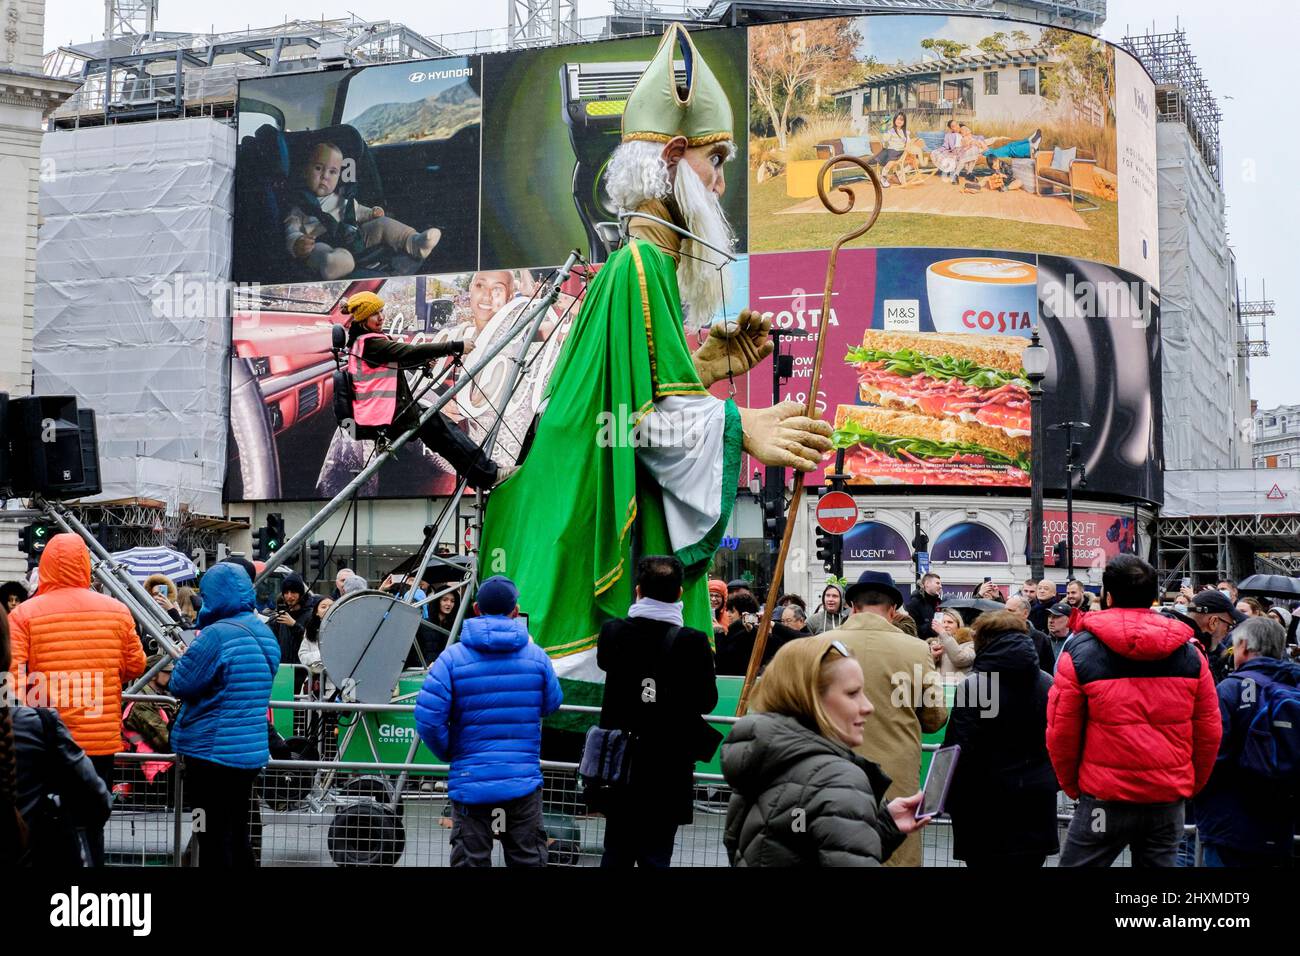 Londres, Royaume-Uni.13th mars 2022. Une marionnette mécanique géante Saint-Patrick divertit les spectateurs le long de la route de la parade annuelle de la Saint-Patrick qui revient à la capitale après une hiatus de deux ans en raison de la pandémie du coronavirus. Banque D'Images